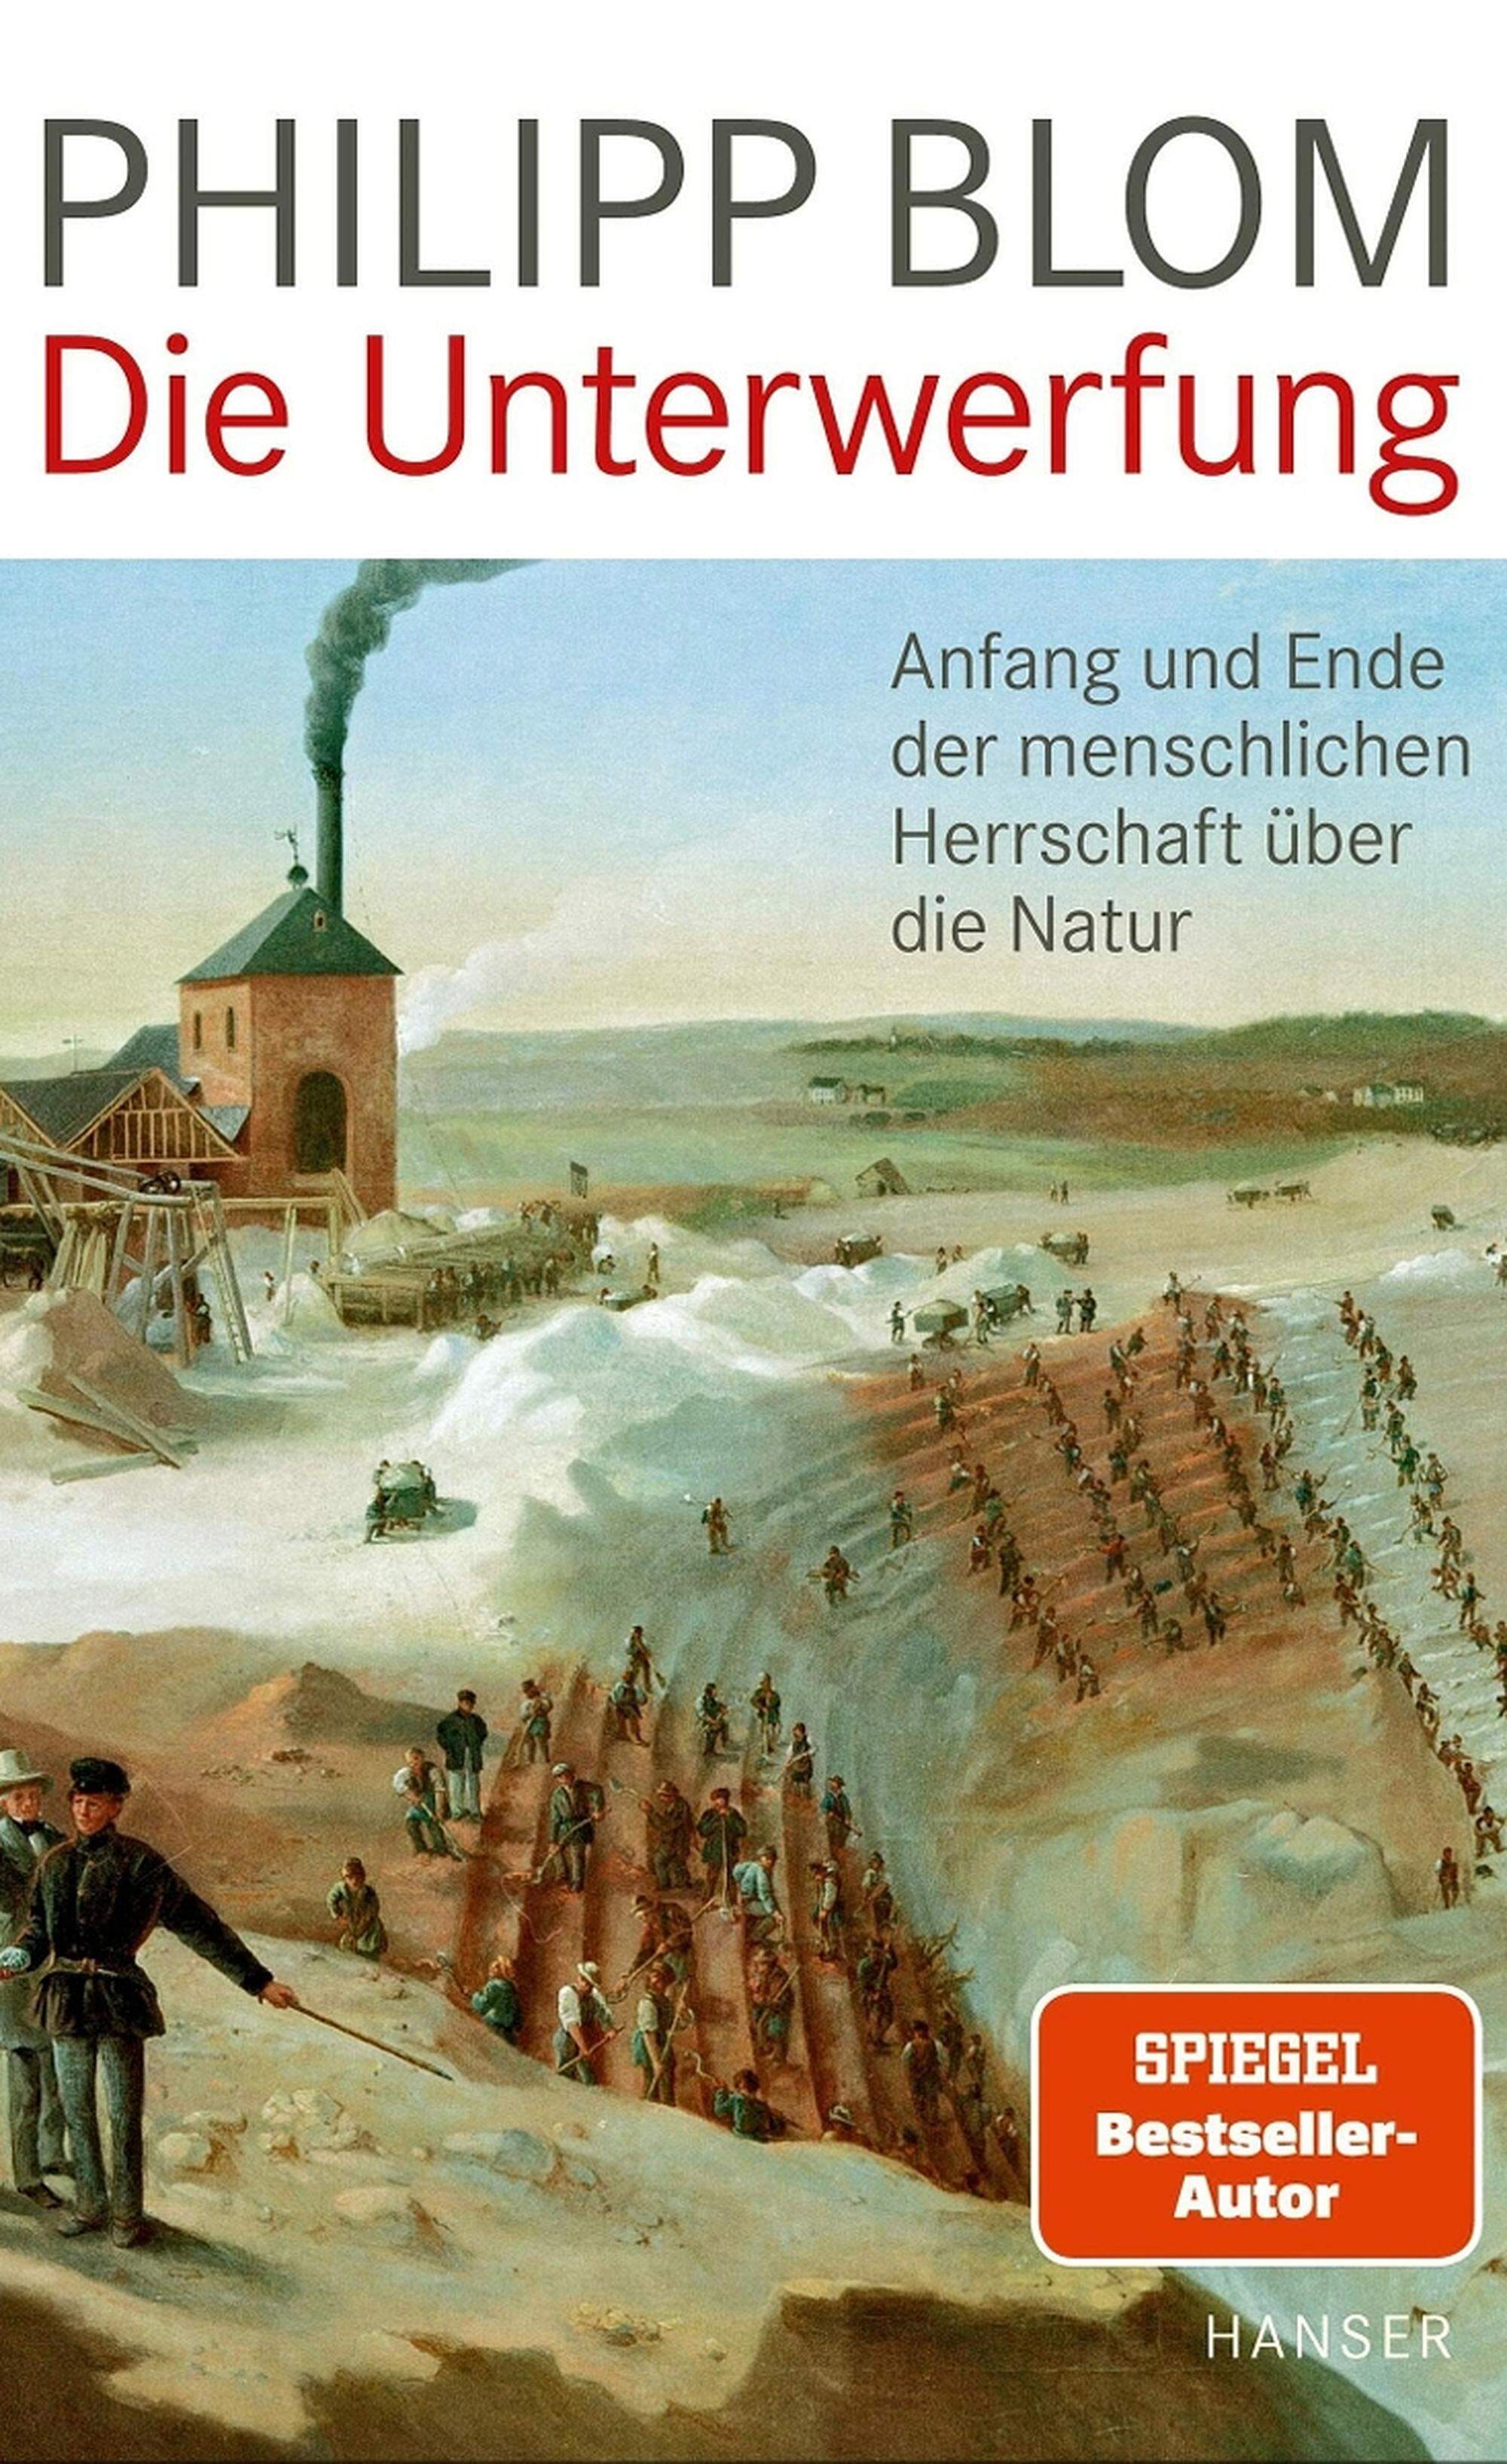 Philipp Blom, „Die Unterwerfung. Anfang und Ende der menschlichen Herrschaft über die Natur“, 368 Seiten, 28 Euro, Hanser Verlag.